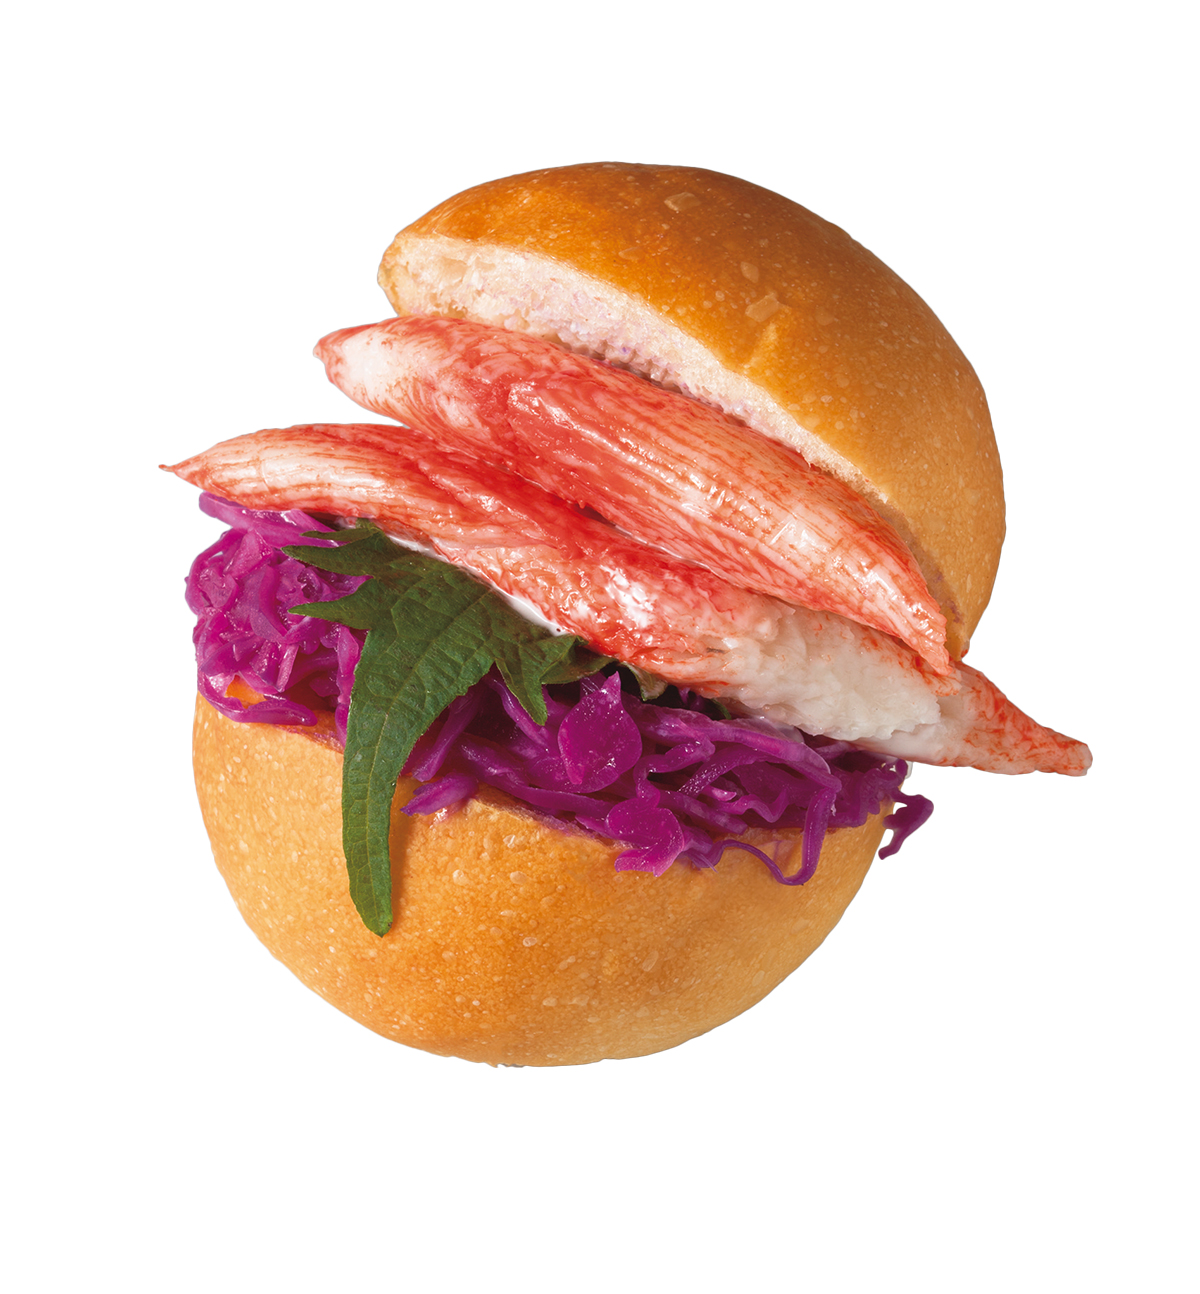  『もちよりぱん SAMBA（さんば）』 <br />
カニカマキャベツ216円<br />
サラダ感覚で食べられる人気の一品